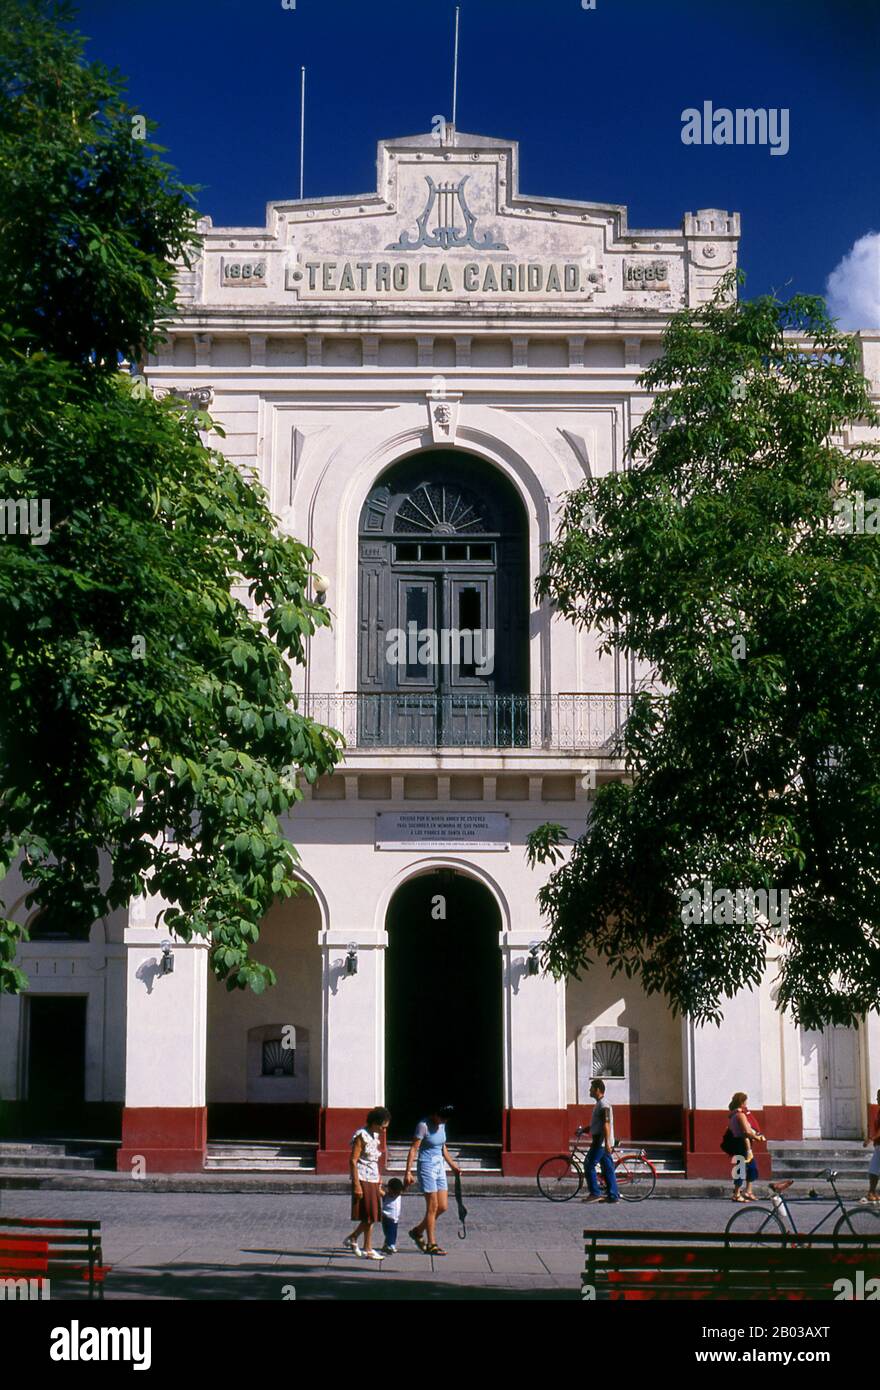 Teatro de La Caridad was built in 1885 and is one of The Eight Grand Theatres of the Cuban Colonial era along with Teatro de la Marina in Santiago de Cuba (1823), Milanes in Pinar del Río (1838), Tacón in Havana (1838), Brunet in Trinidad (1840), Principal in Camagüey (1850), Sauto in Matanzas (1863) and Terry in Cienfuegos (1890). Stock Photo